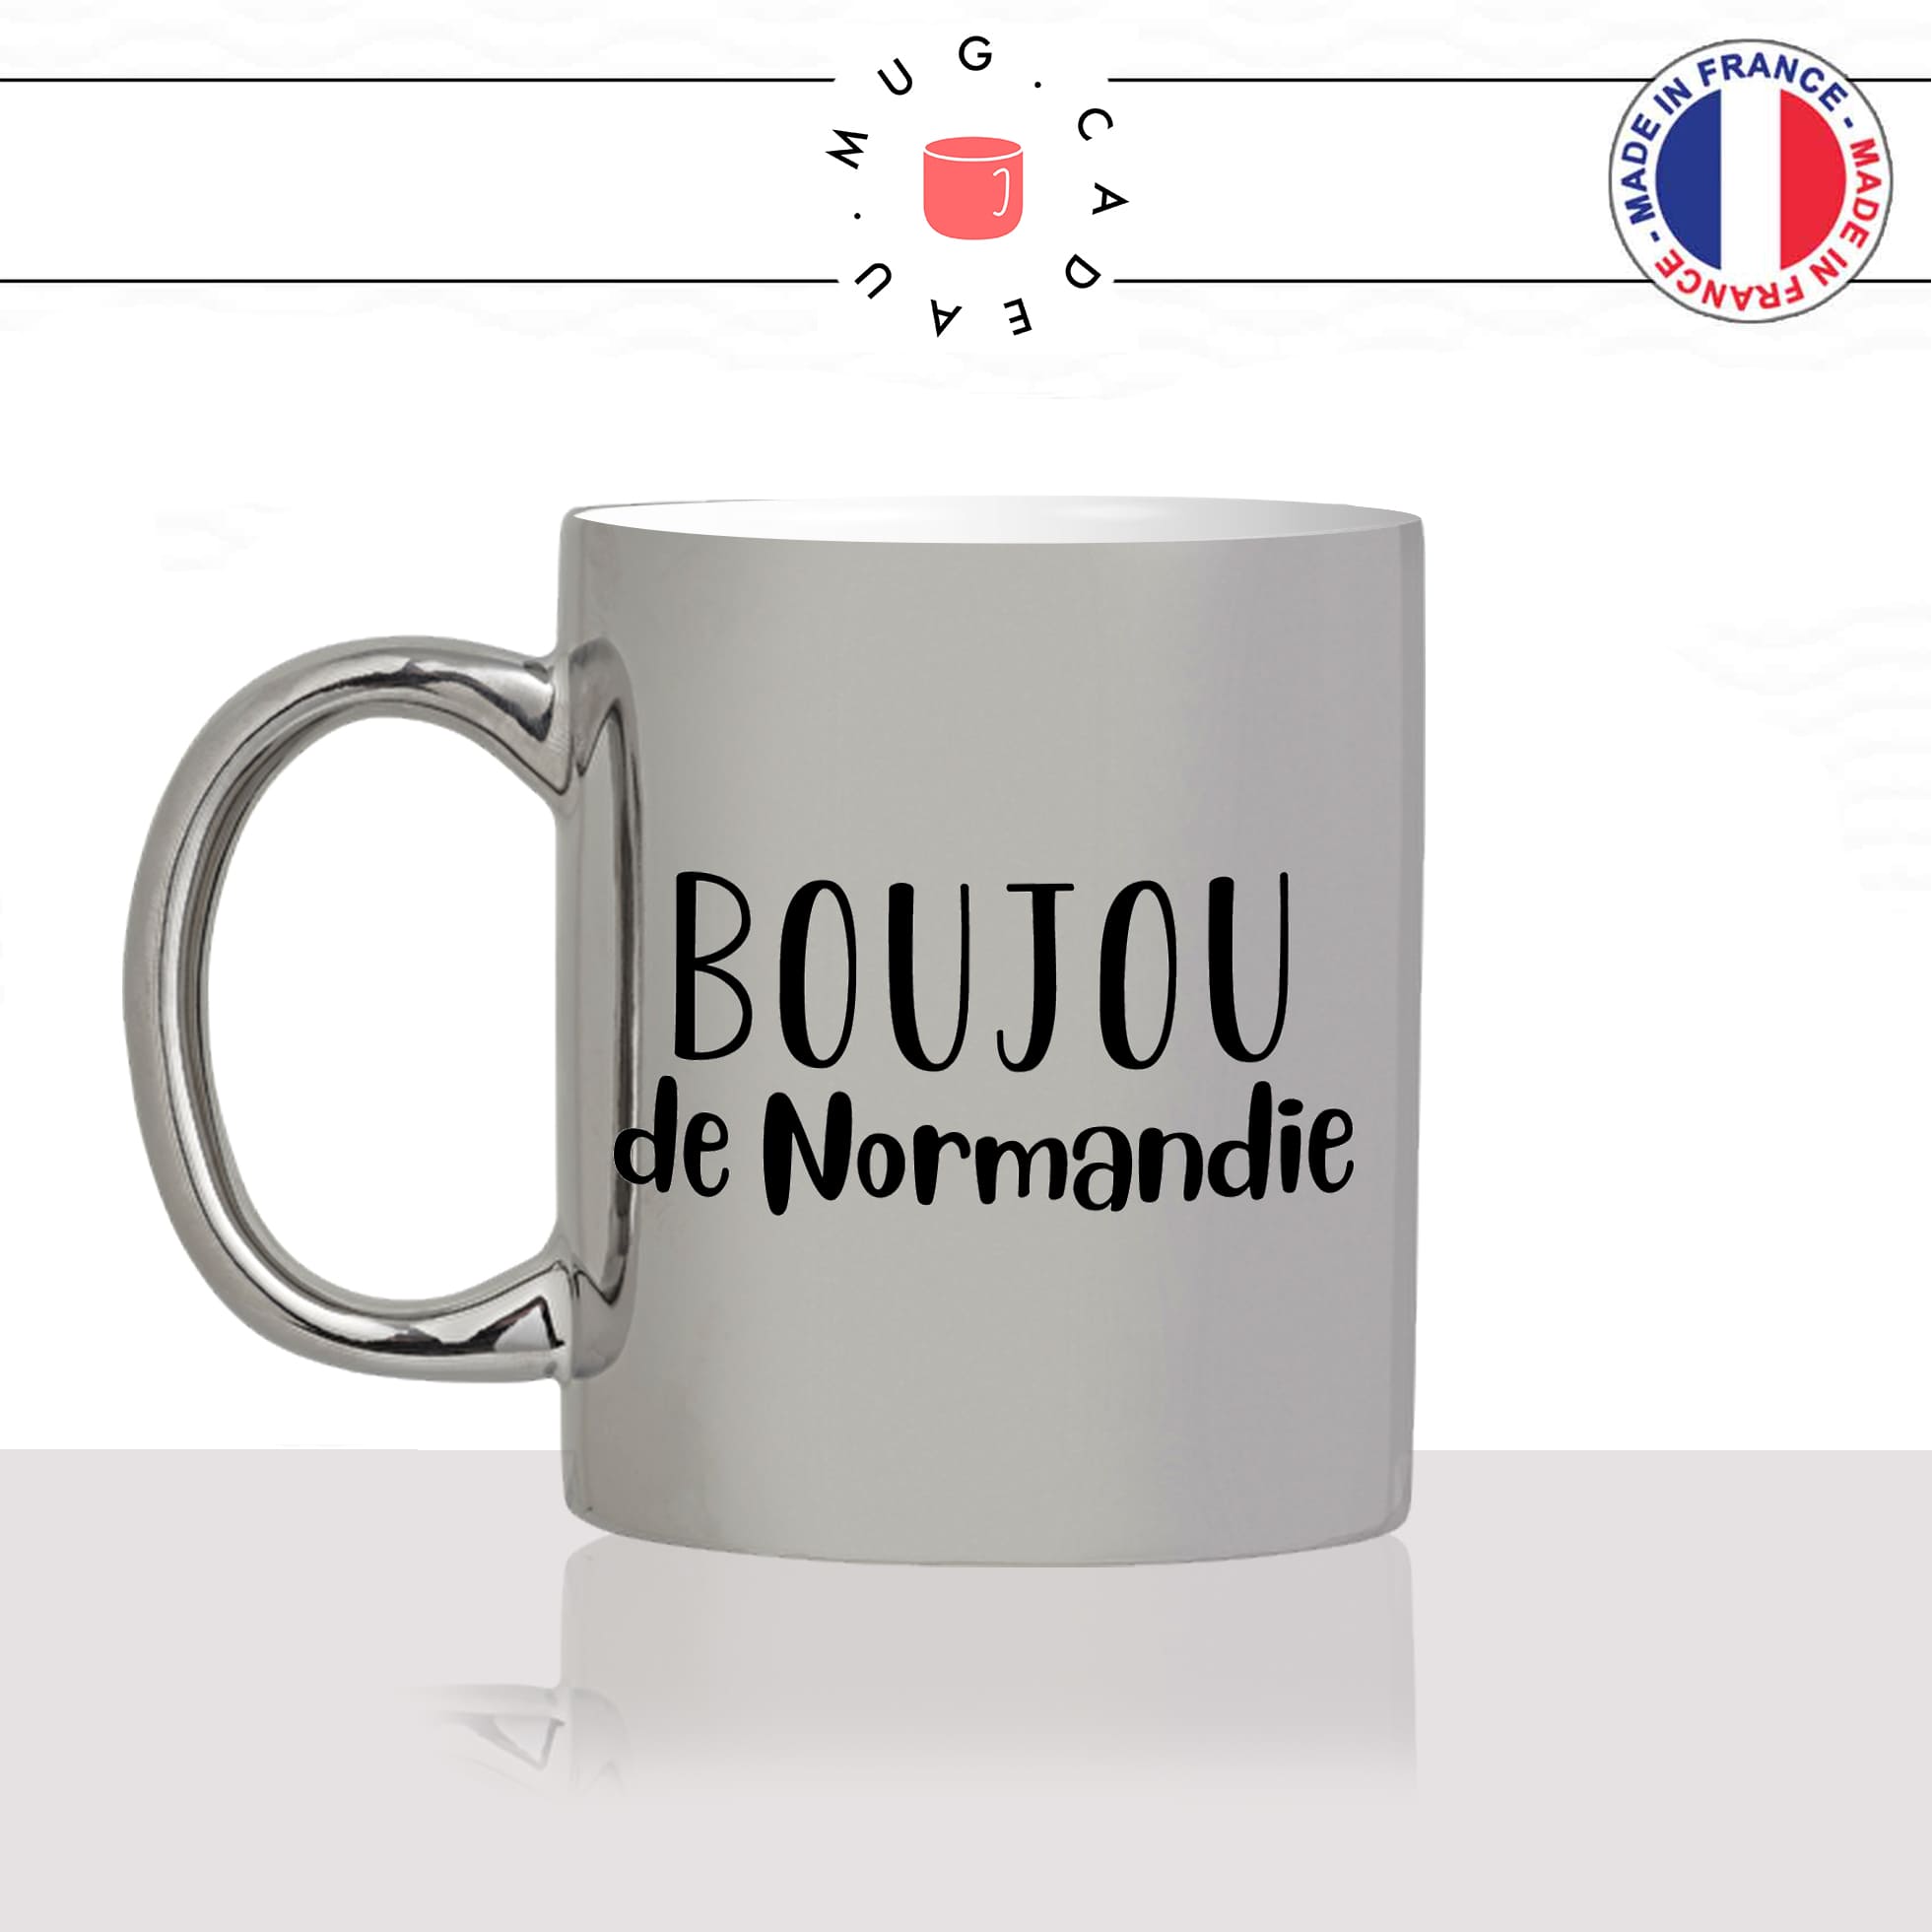 mug-tasse-argent-argenté-silver-boujou-de-normandie-normand-bisou-bonjour-patois-france-francais-idée-cadeau-fun-cool-café-thé